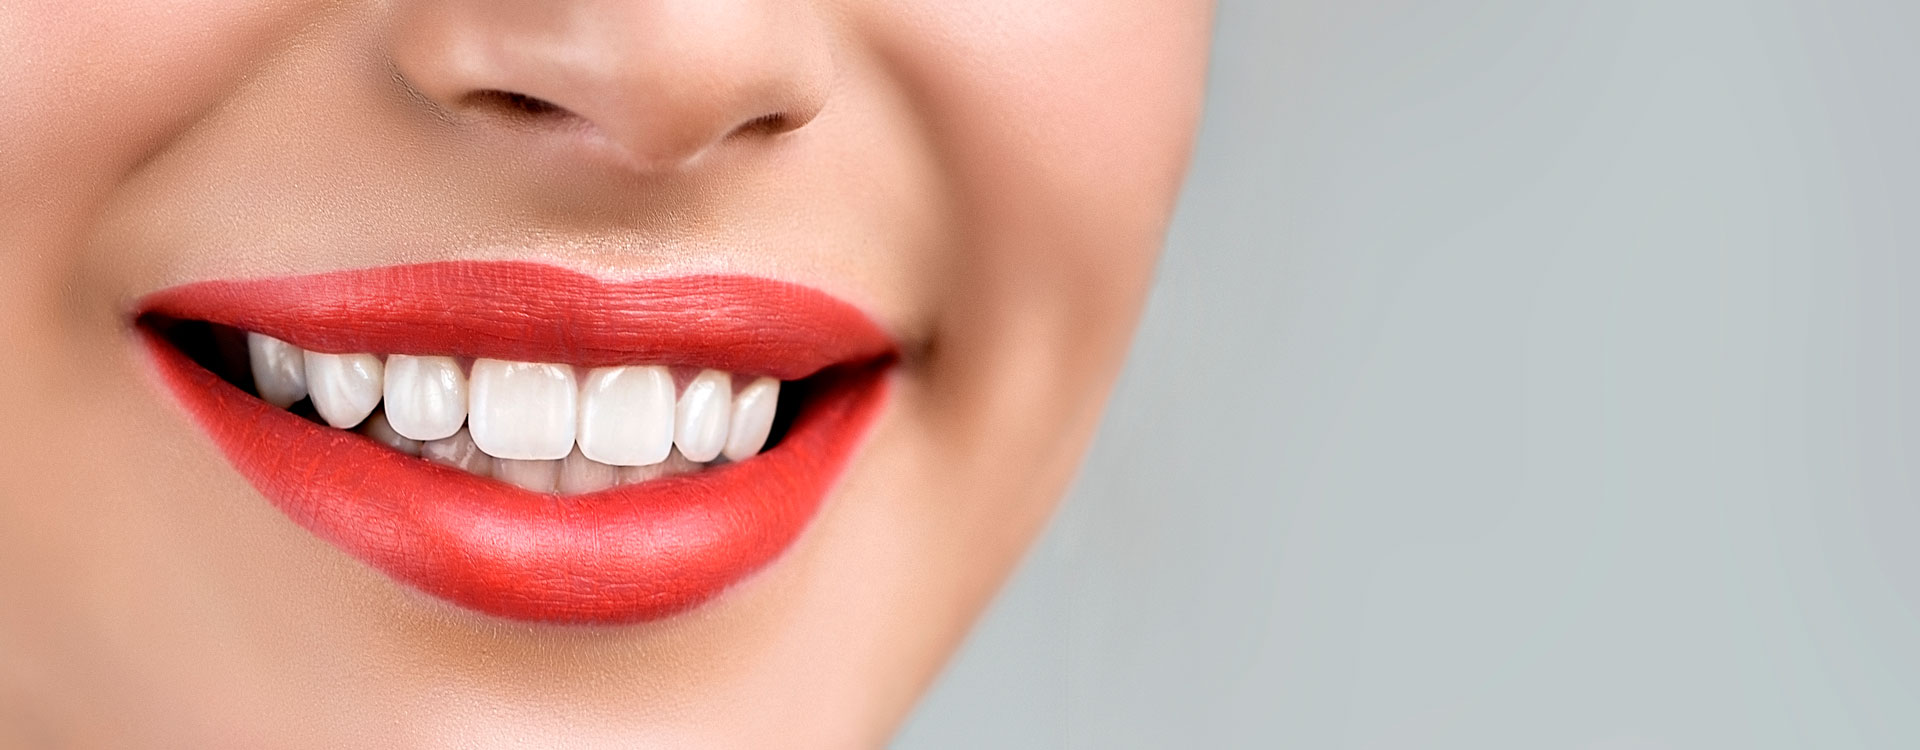 Несколько познавательных фактов о наших зубах